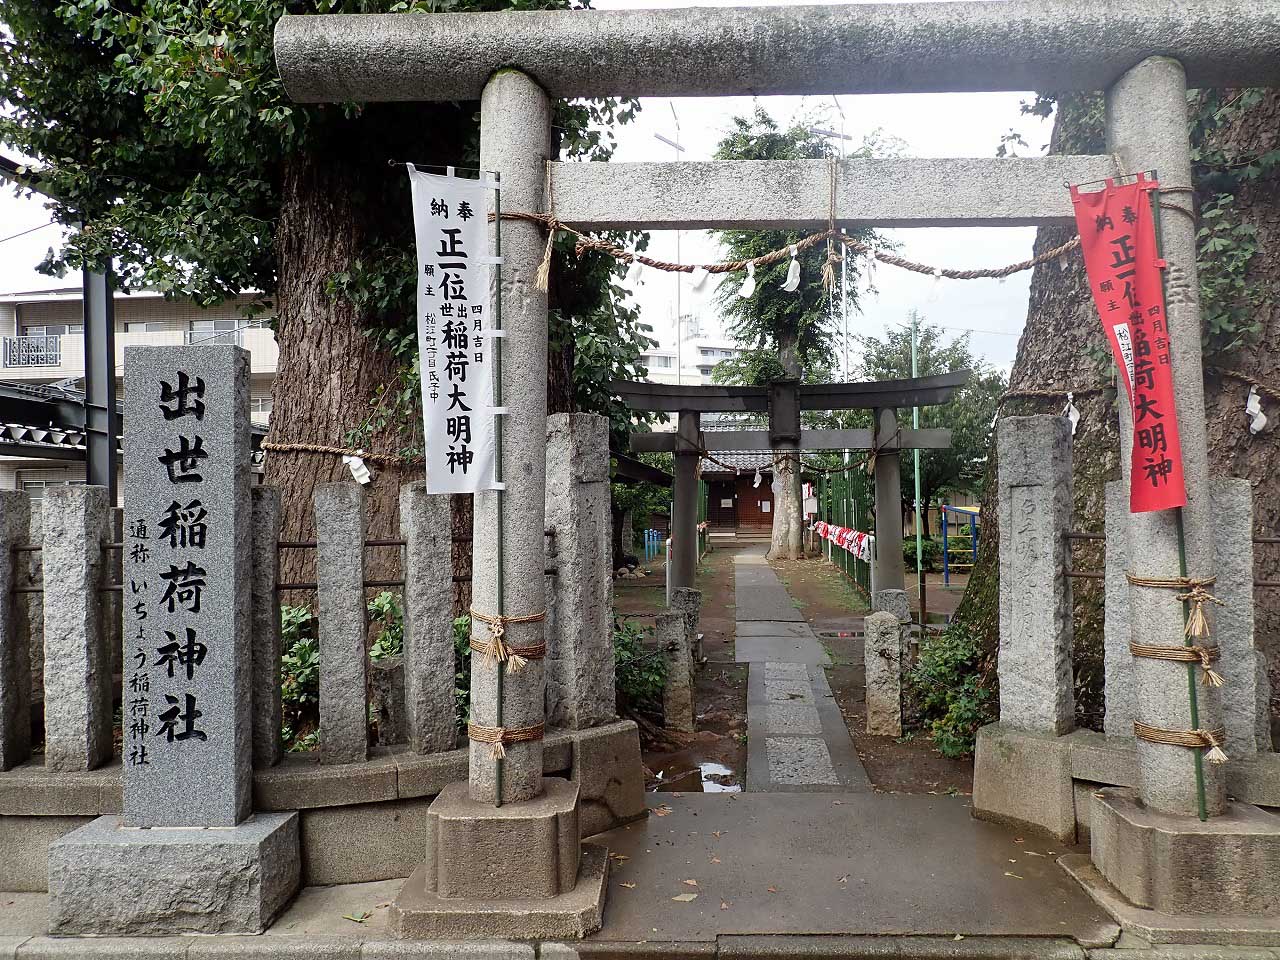 川越の有名な神社仏閣「出世稲荷神社」